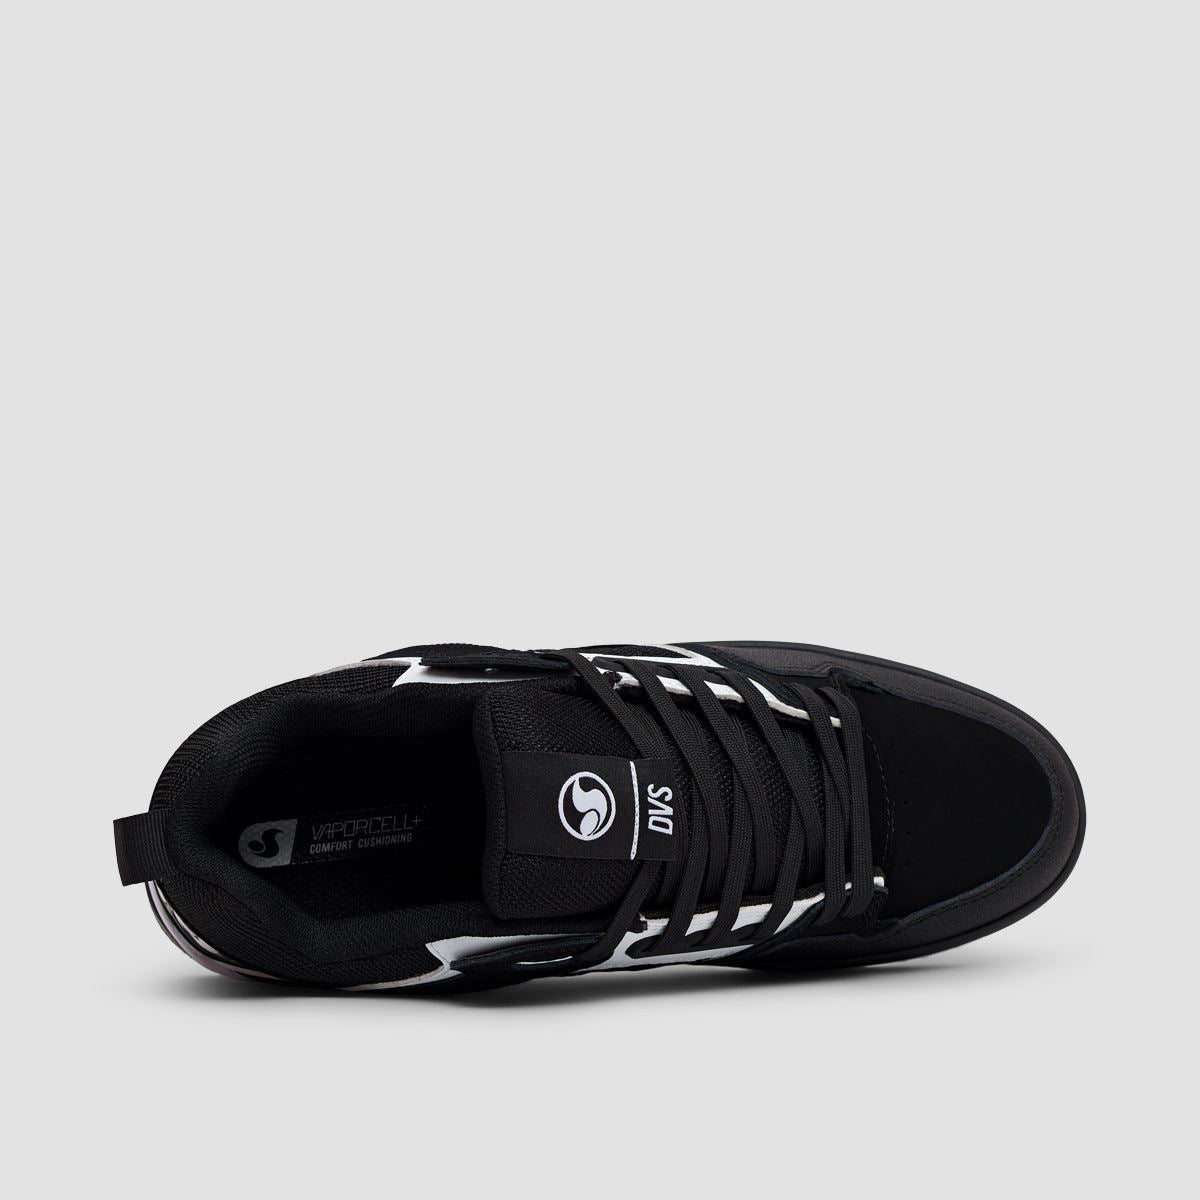 DVS Comanche 2.0+ Shoes - Black/White/Black Nubuck